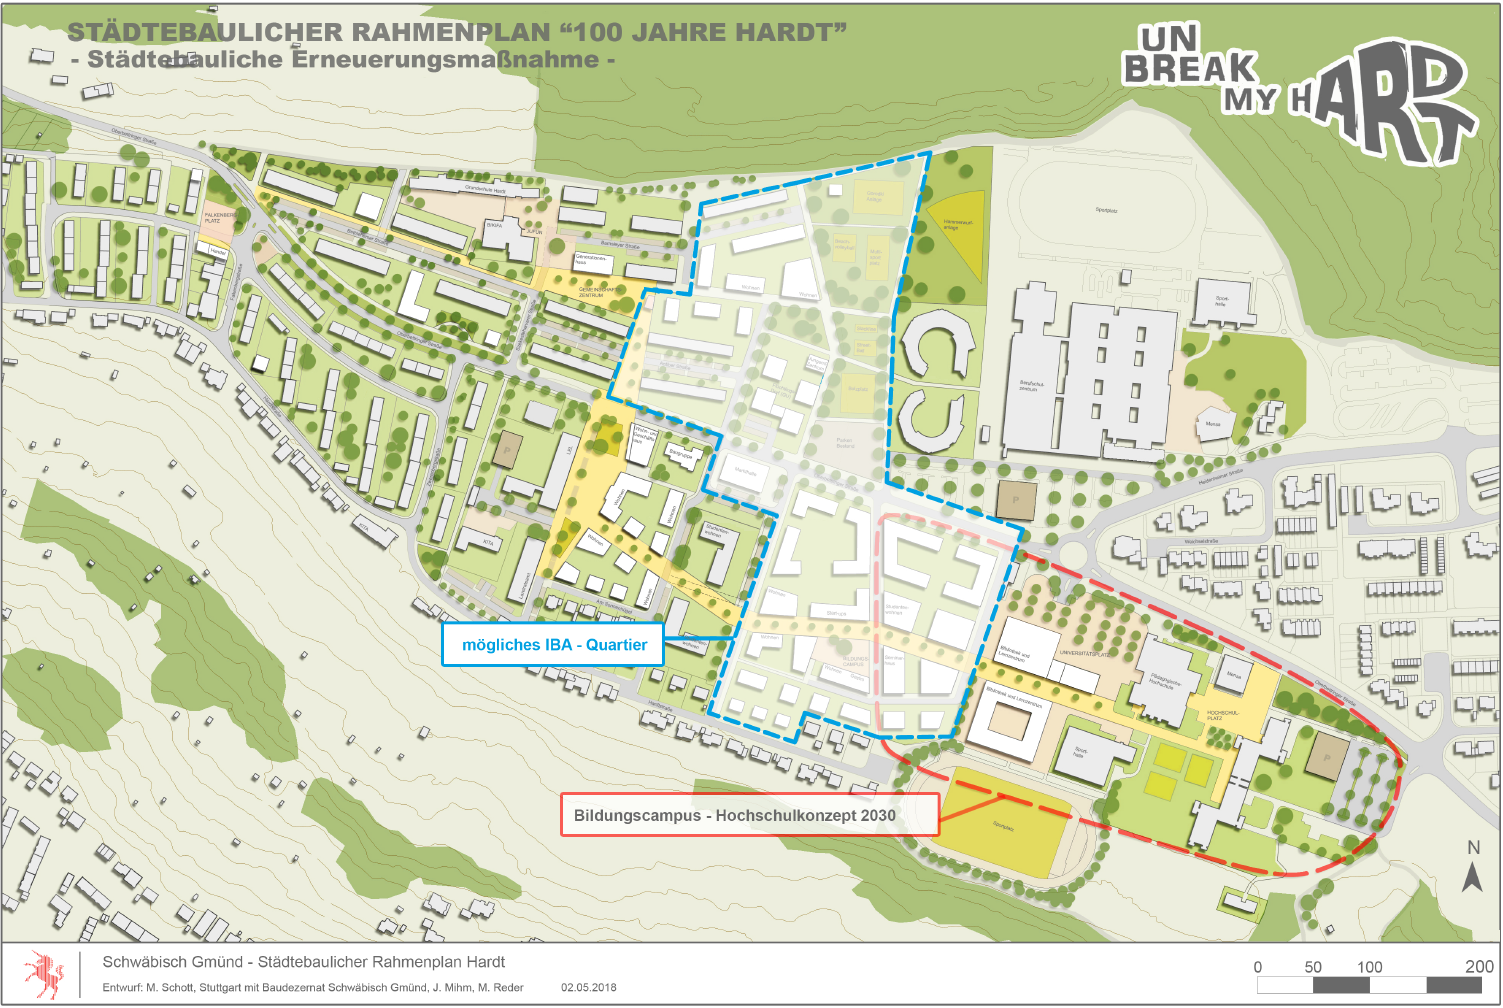 Die Abbildung zeigt einen Plan auf dem der Stadtteil Hardt der Stadt Schwäbisch Gmünd und die baulichen Veränderungen zu sehen sind, die dort geplant sind.